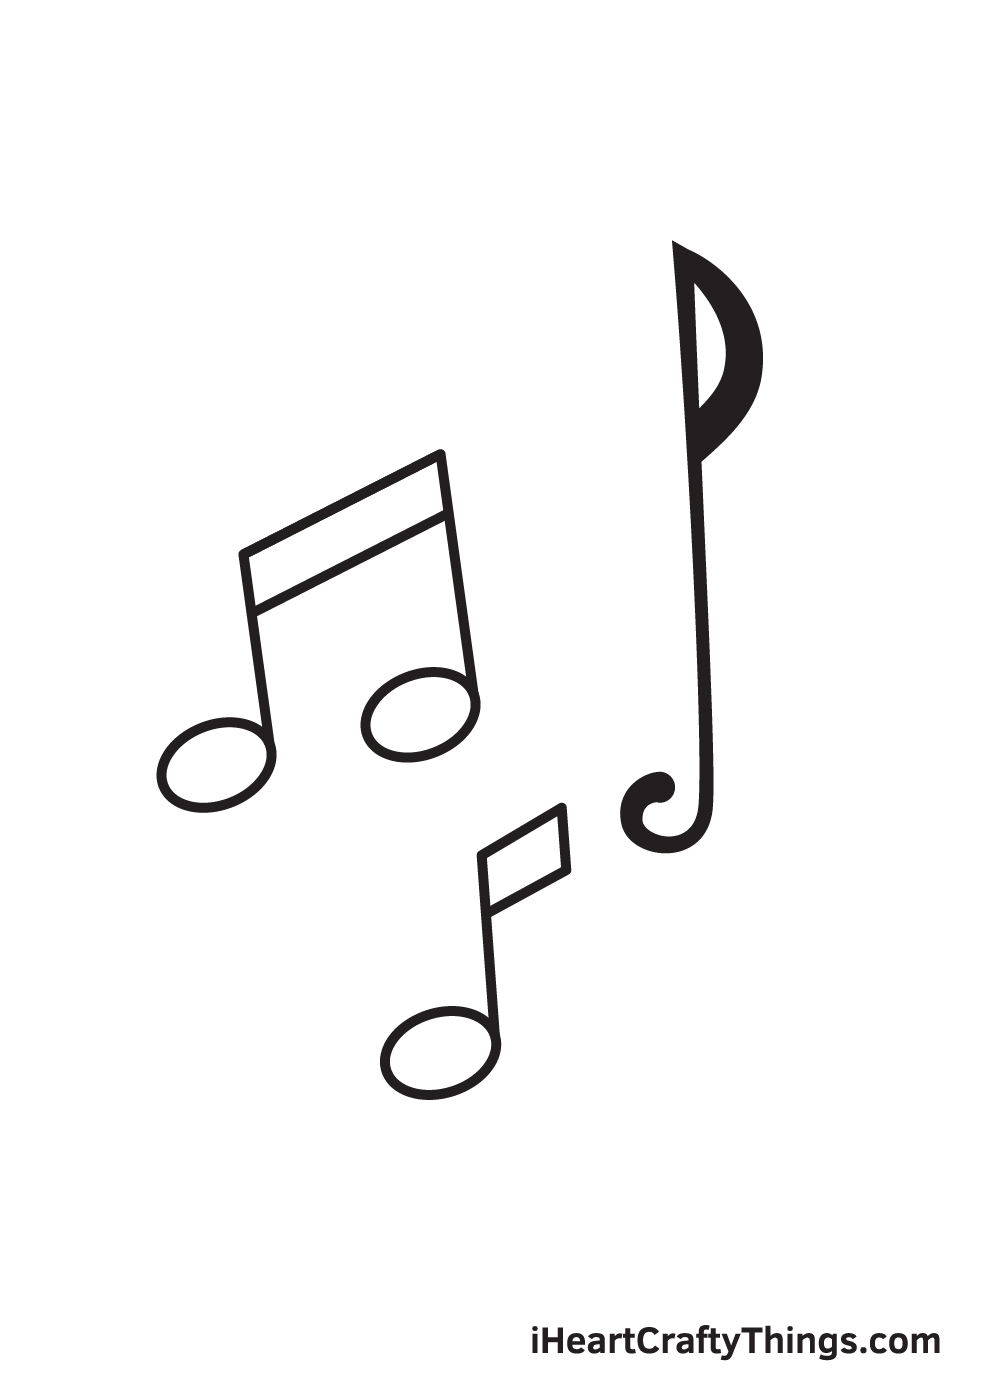 Music Notes DRAWING – STEP 7 - Hướng dẫn chi tiết cách vẽ nốt nhạc đơn giản với 9 bước cơ bản ai cũng làm được